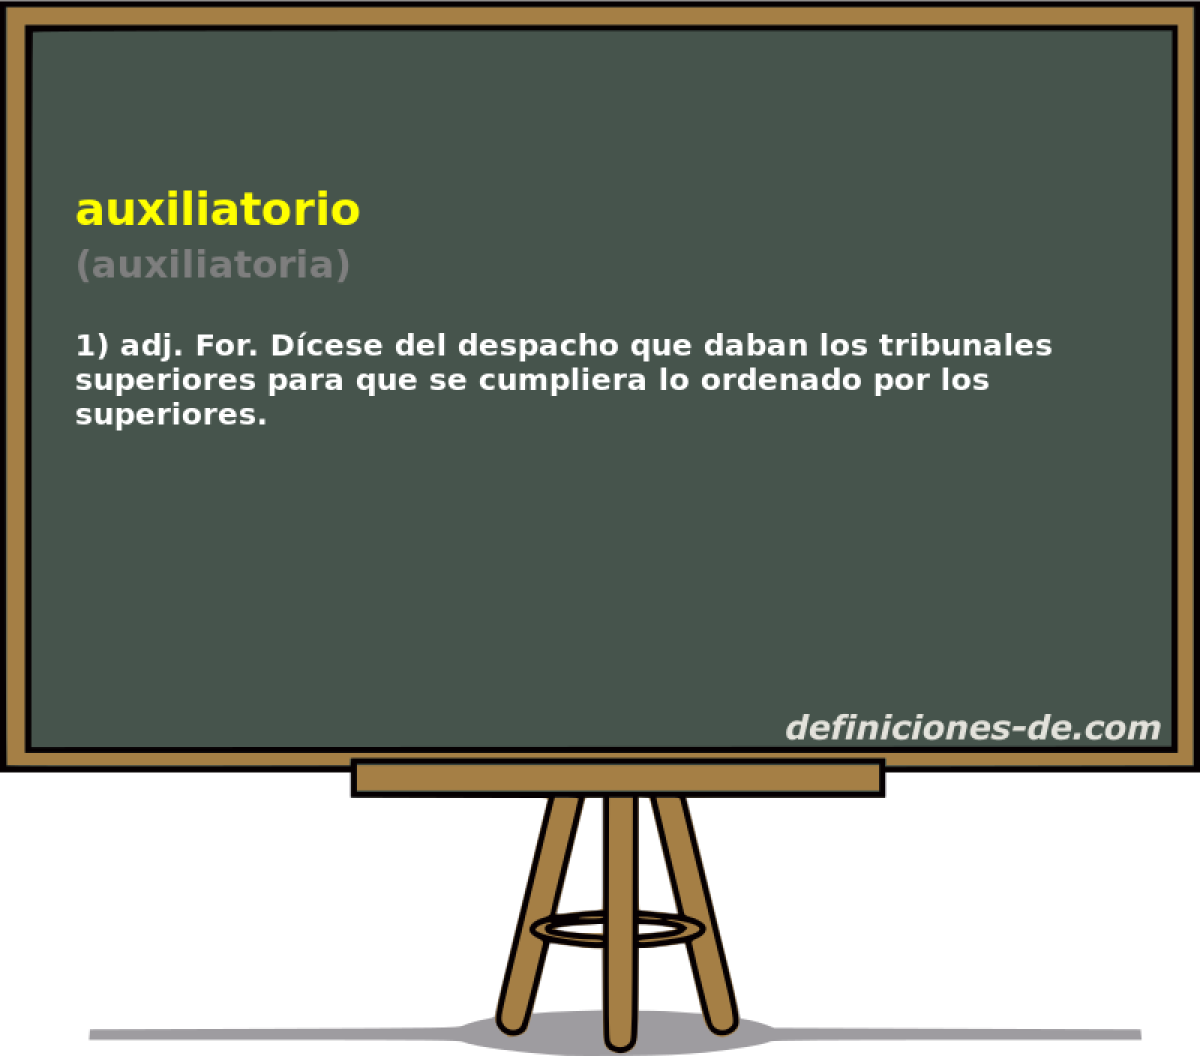 auxiliatorio (auxiliatoria)